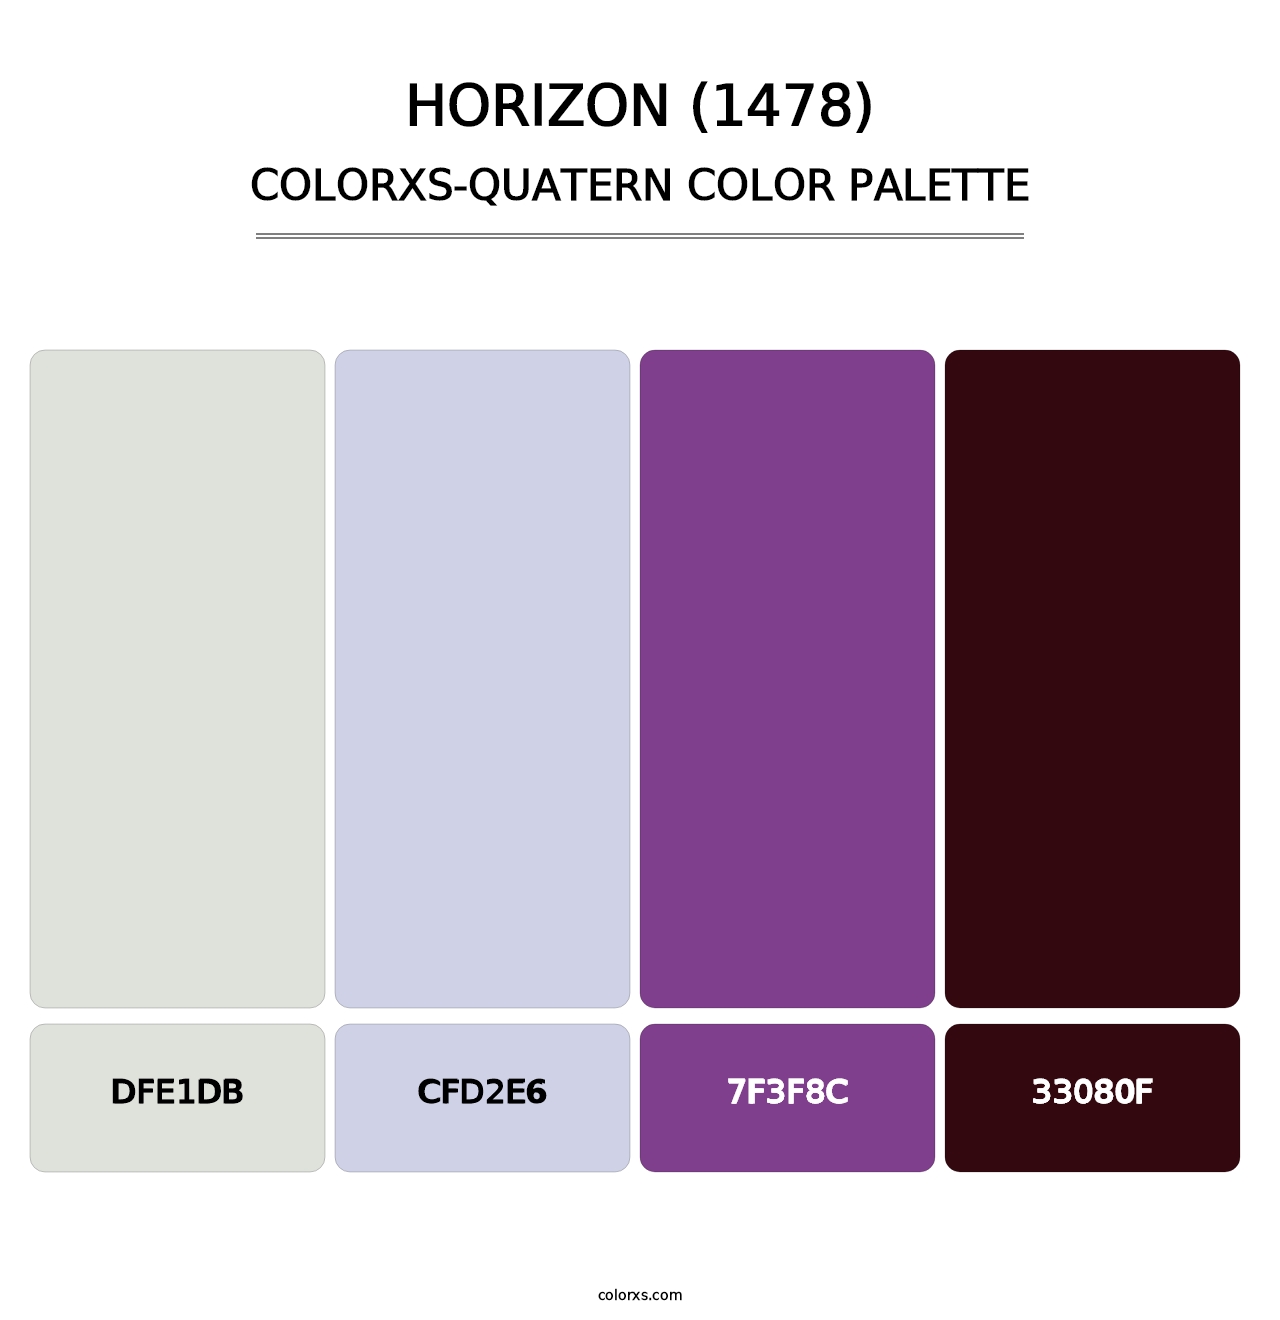 Horizon (1478) - Colorxs Quatern Palette